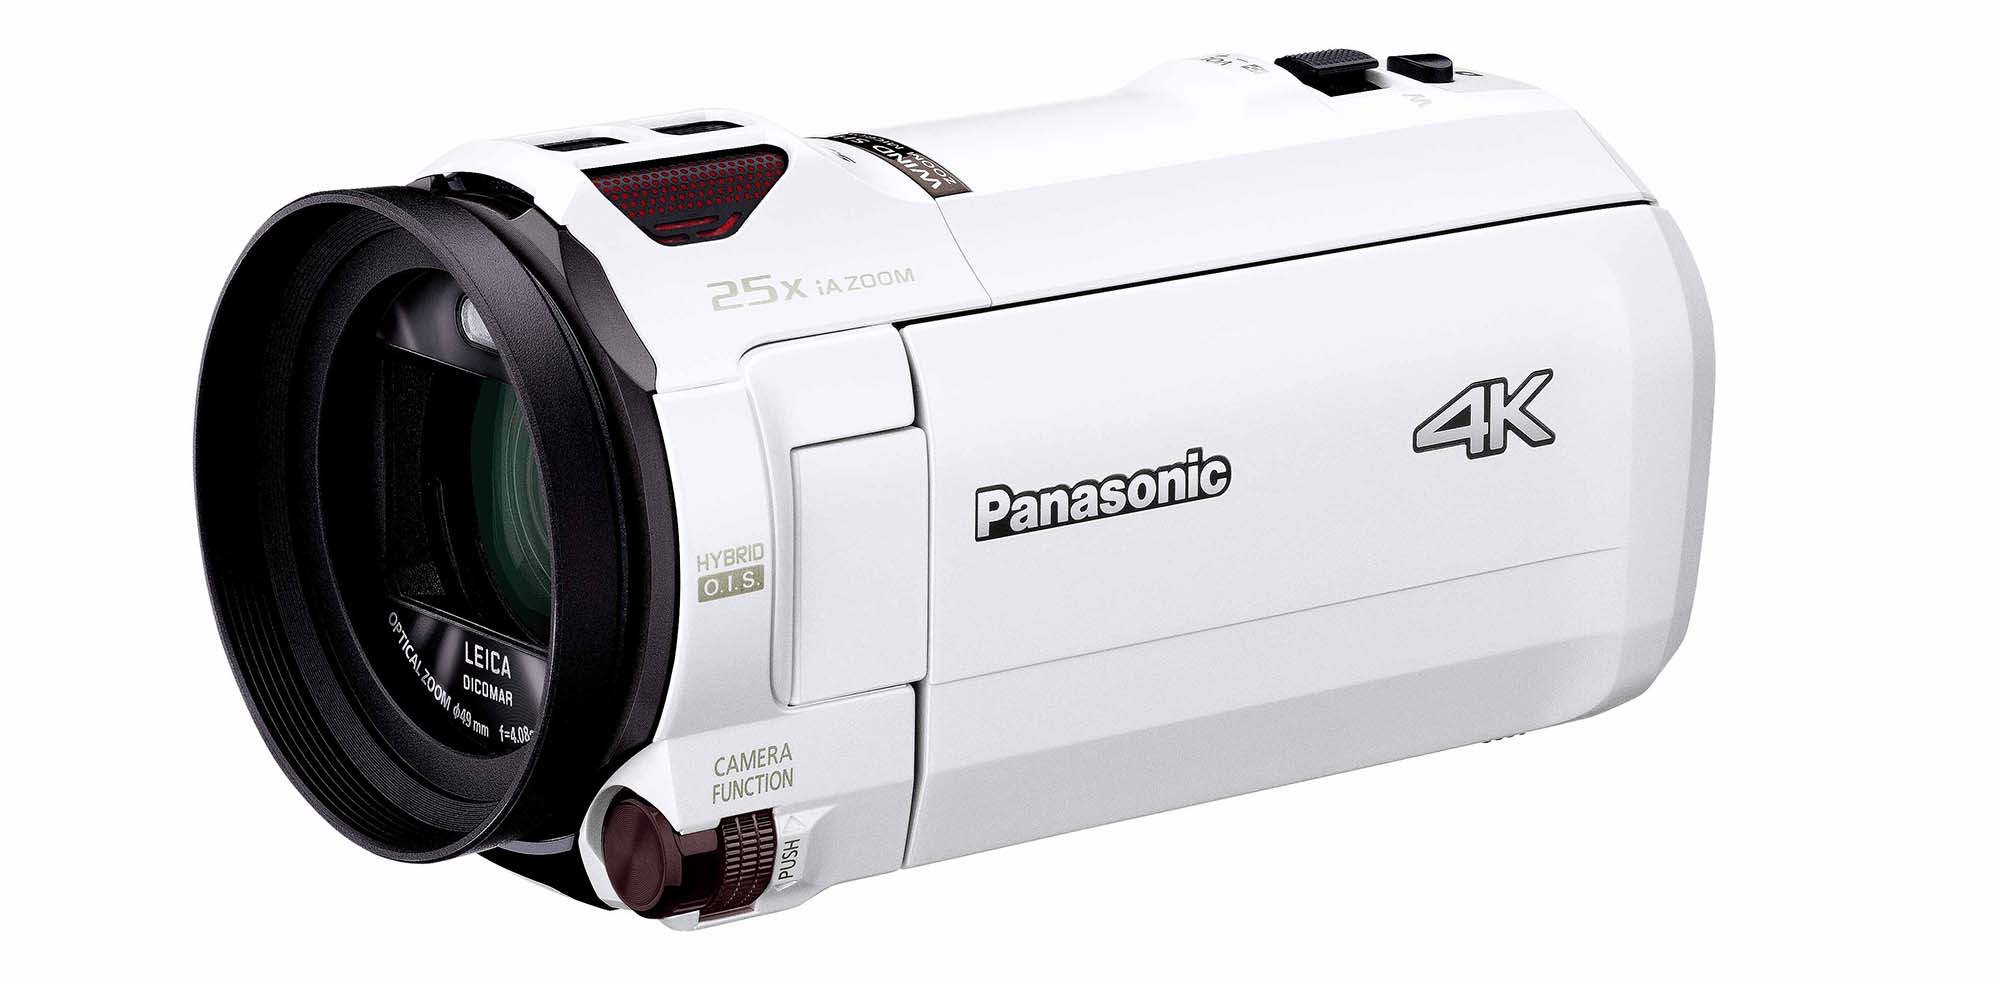 パナソニック、WXF1Mなど4Kビデオカメラ2018年モデル4機種を発表 ...